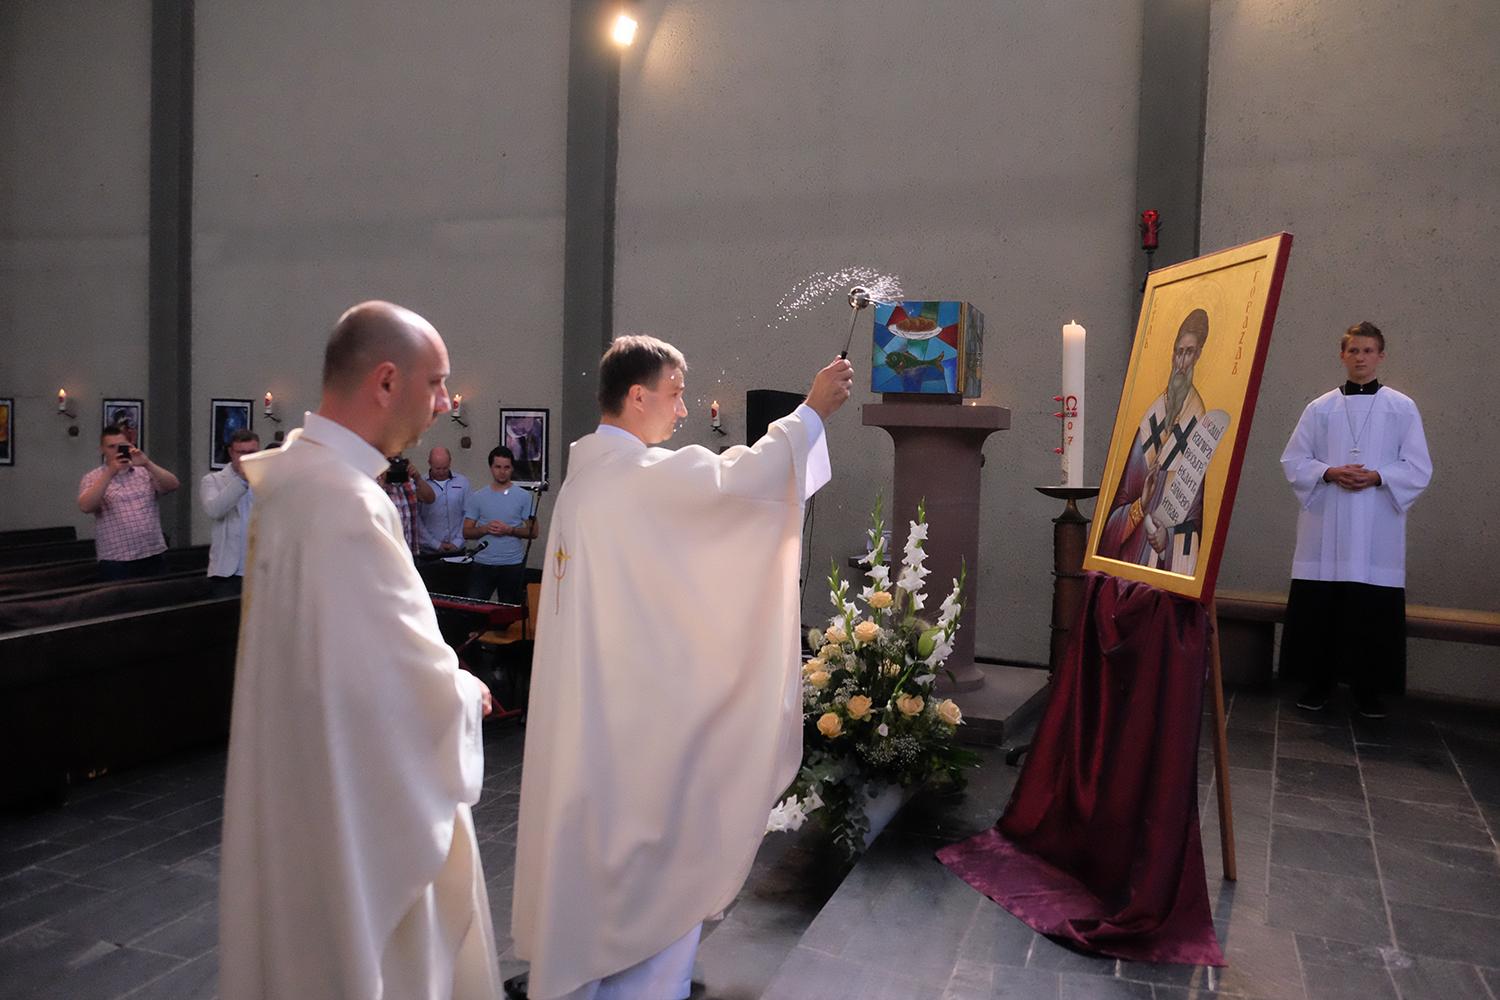 Duchovný otec Juraj Sabadoš: Stal som sa kňazom pre hlad po niečom väčšom